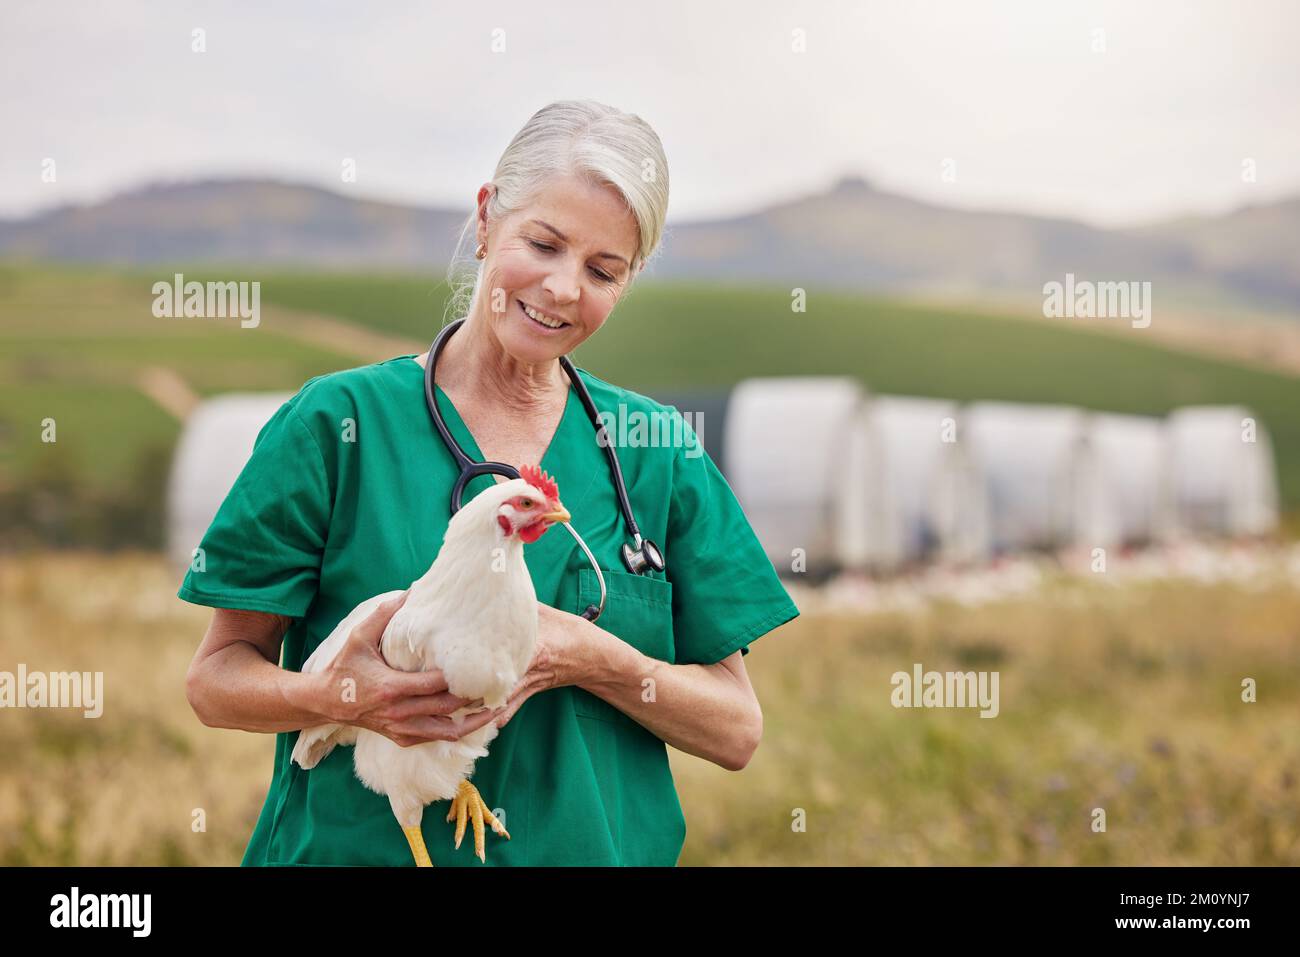 Behandeln Sie Tiere mit Freundlichkeit und Respekt. Ein reifer Tierarzt, der ein Huhn in einem Geflügelhaltungsbetrieb hält. Stockfoto